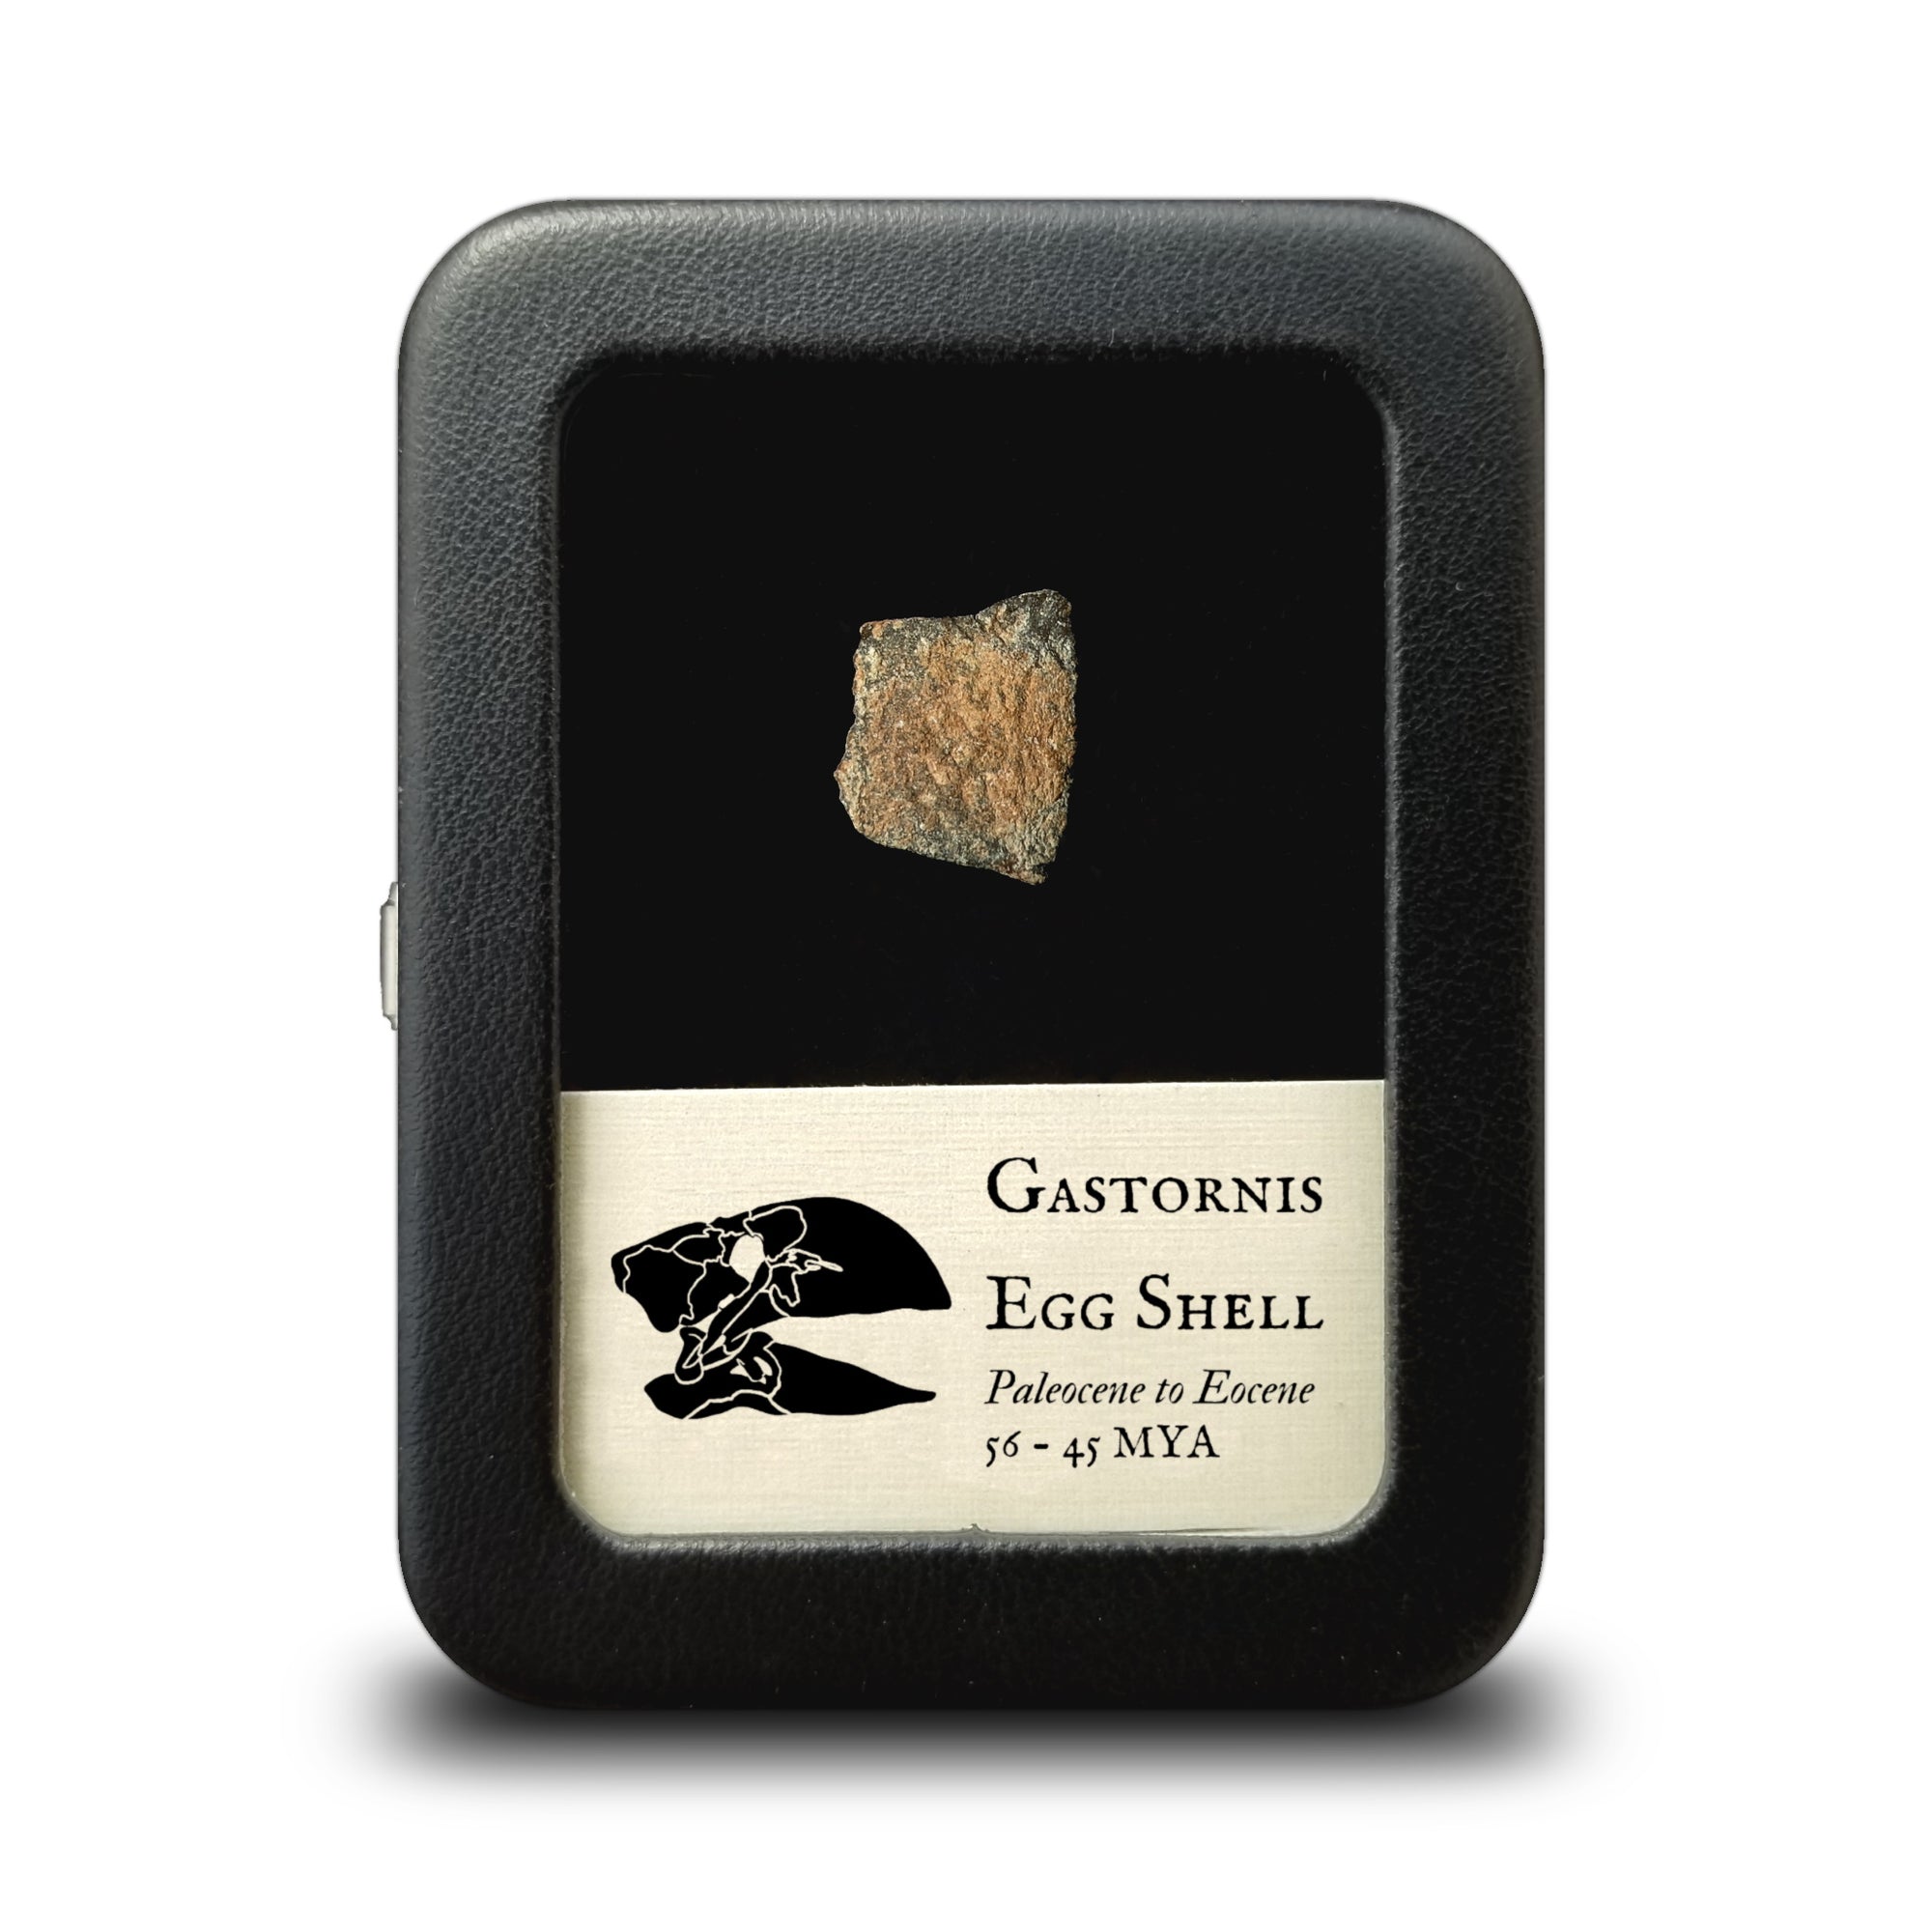 Gastornis Egg Shell Fragment - Paleocene to Eocene Epoch - 56 to 45 MYA - Salernes, France